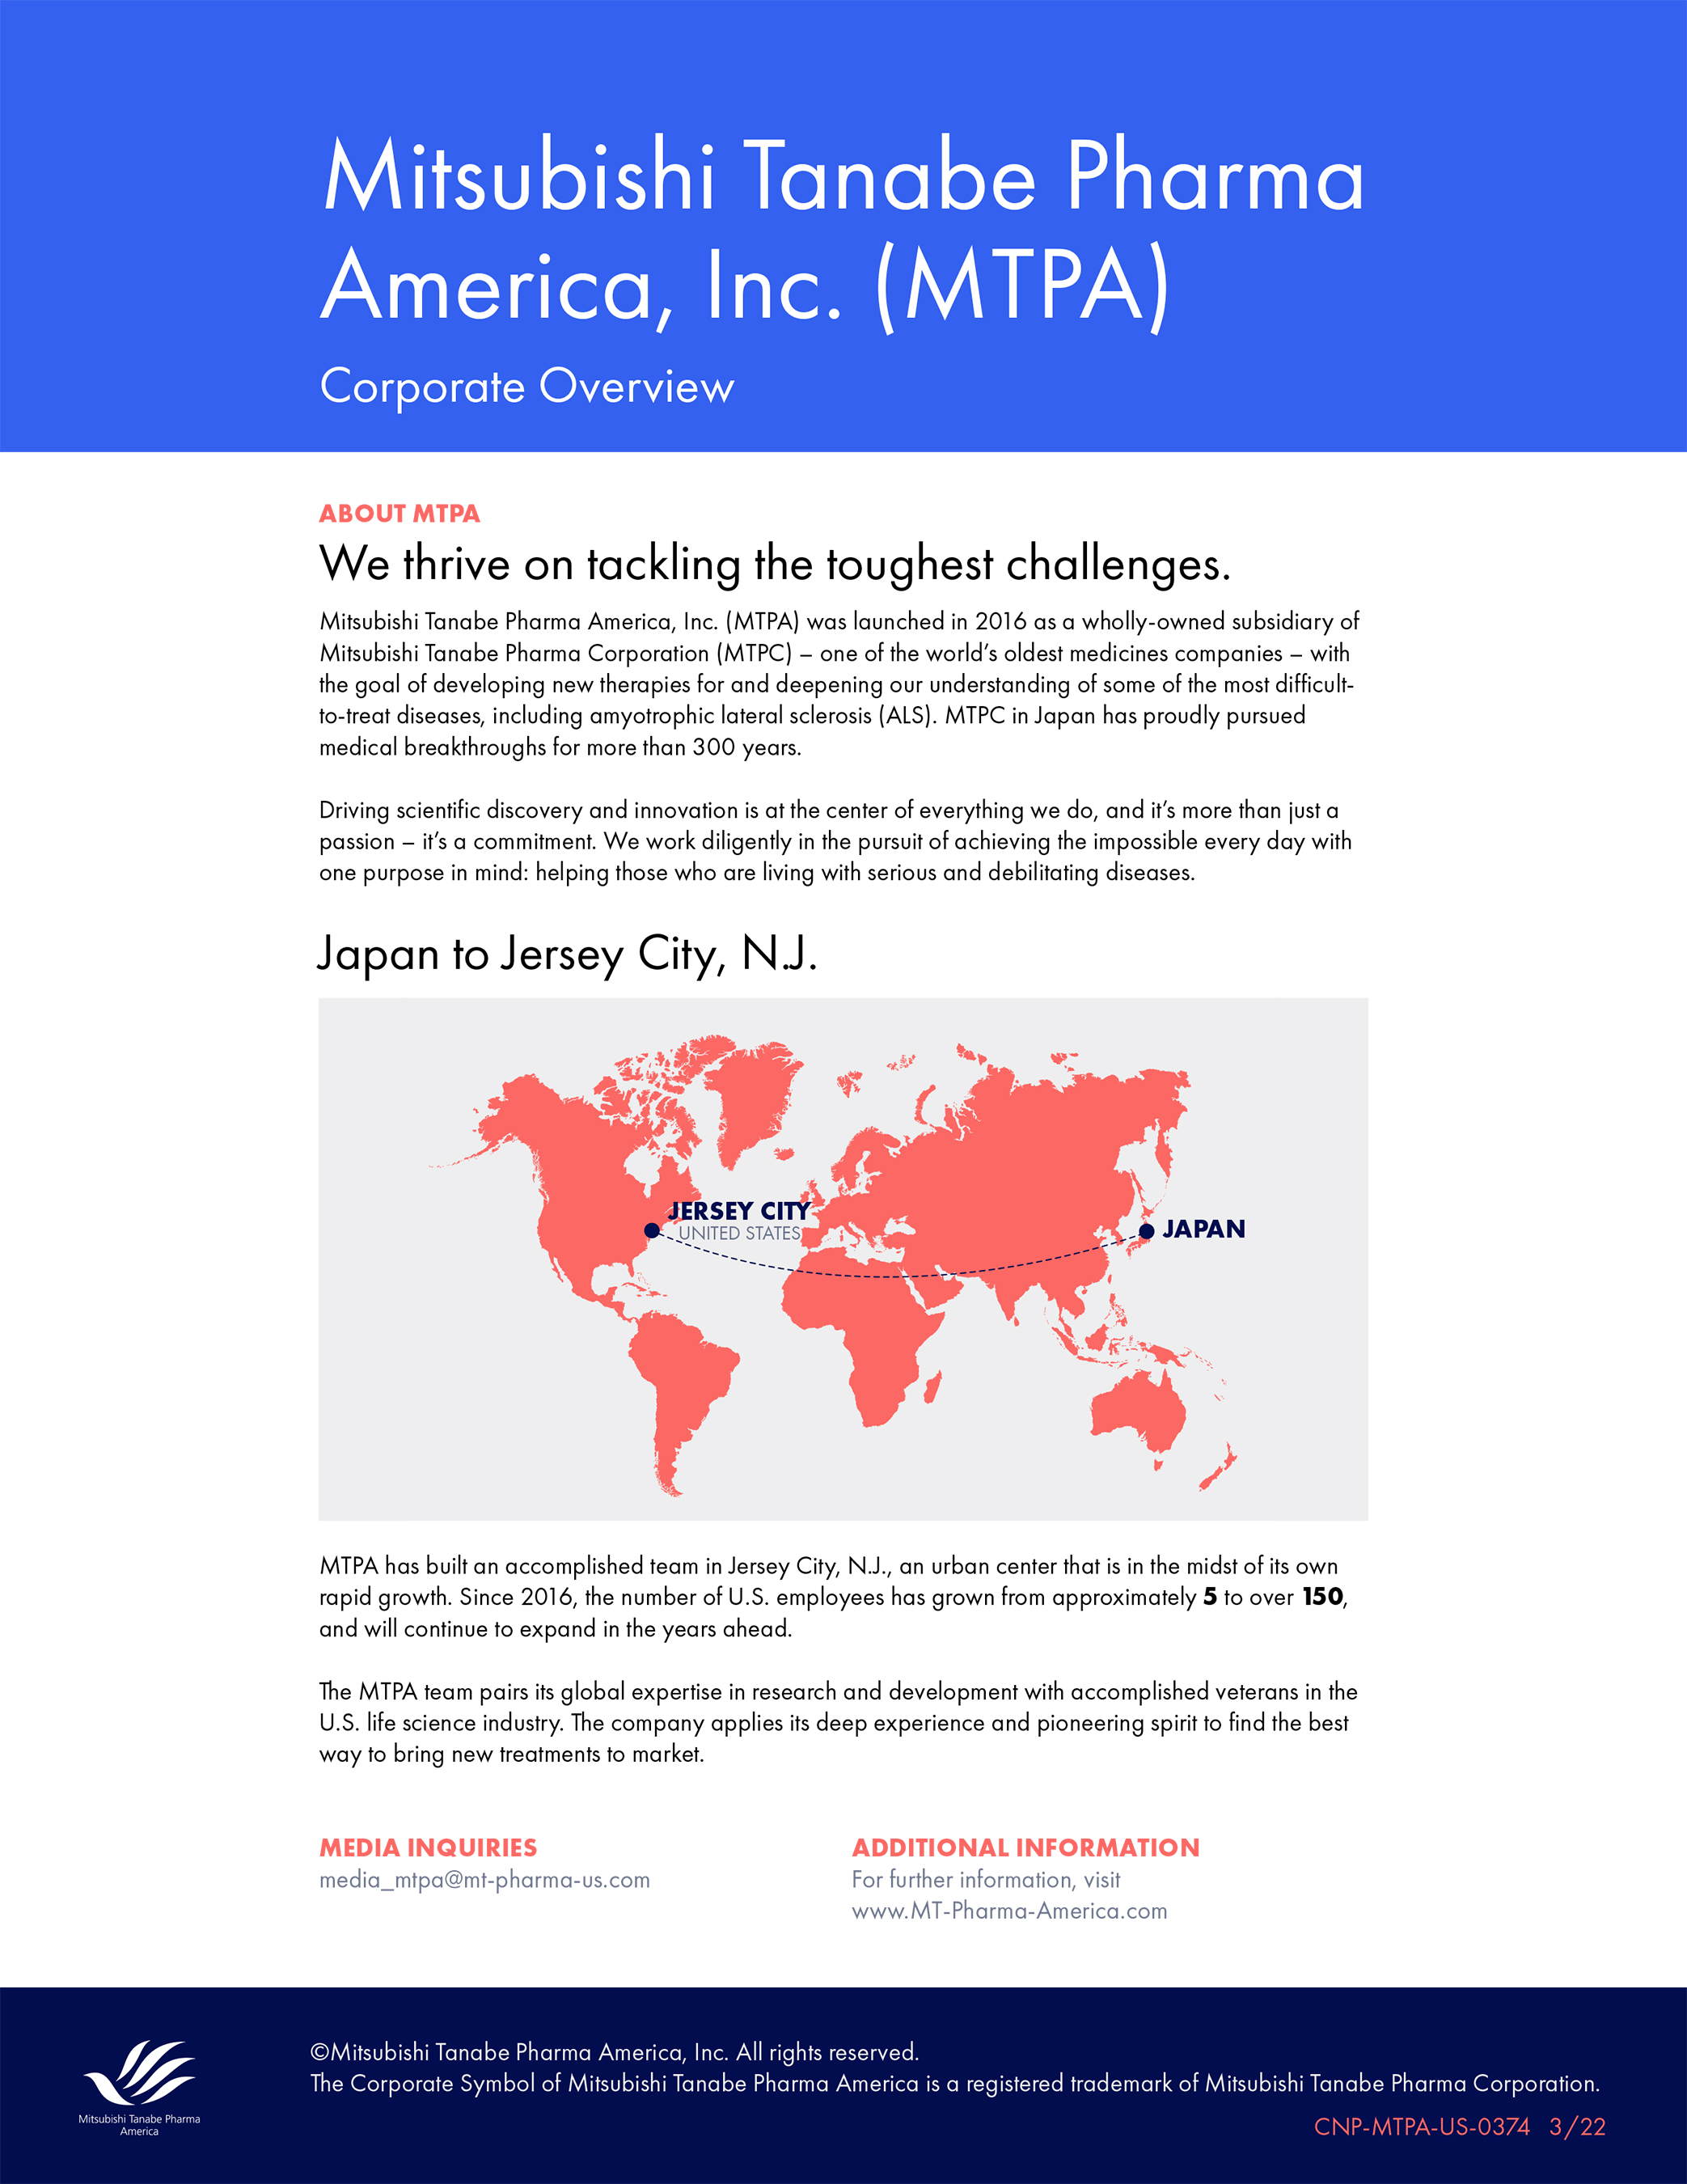 Mitsubishi Tanabe Pharma America Fact Sheet